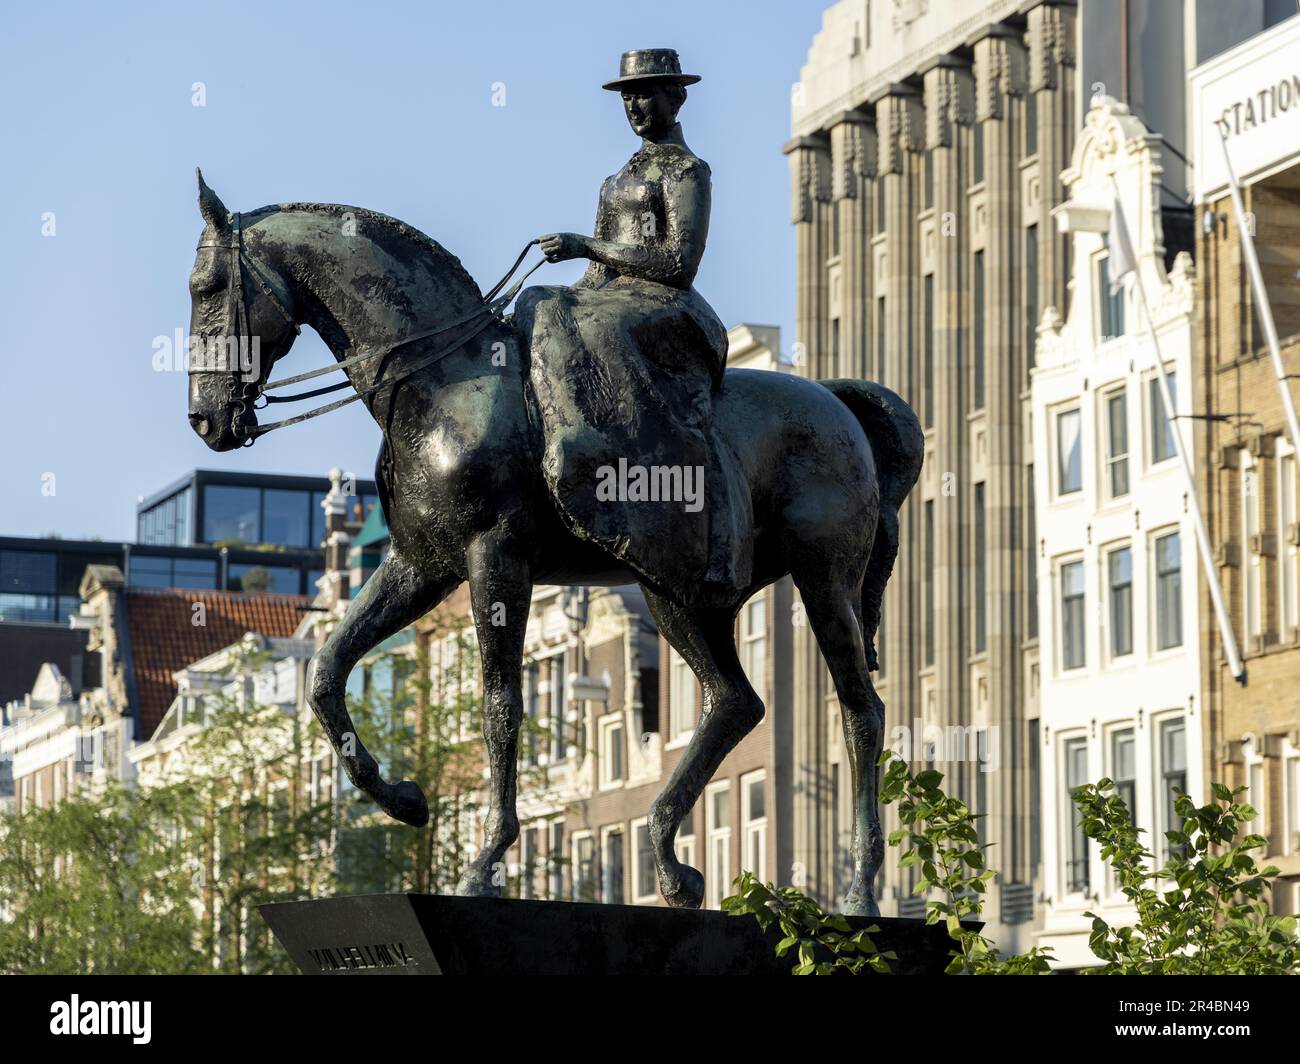 Statua equestre della regina Wilhelmina, Amsterdam, capitale dei Paesi Bassi, Olanda, Europa occidentale Foto Stock